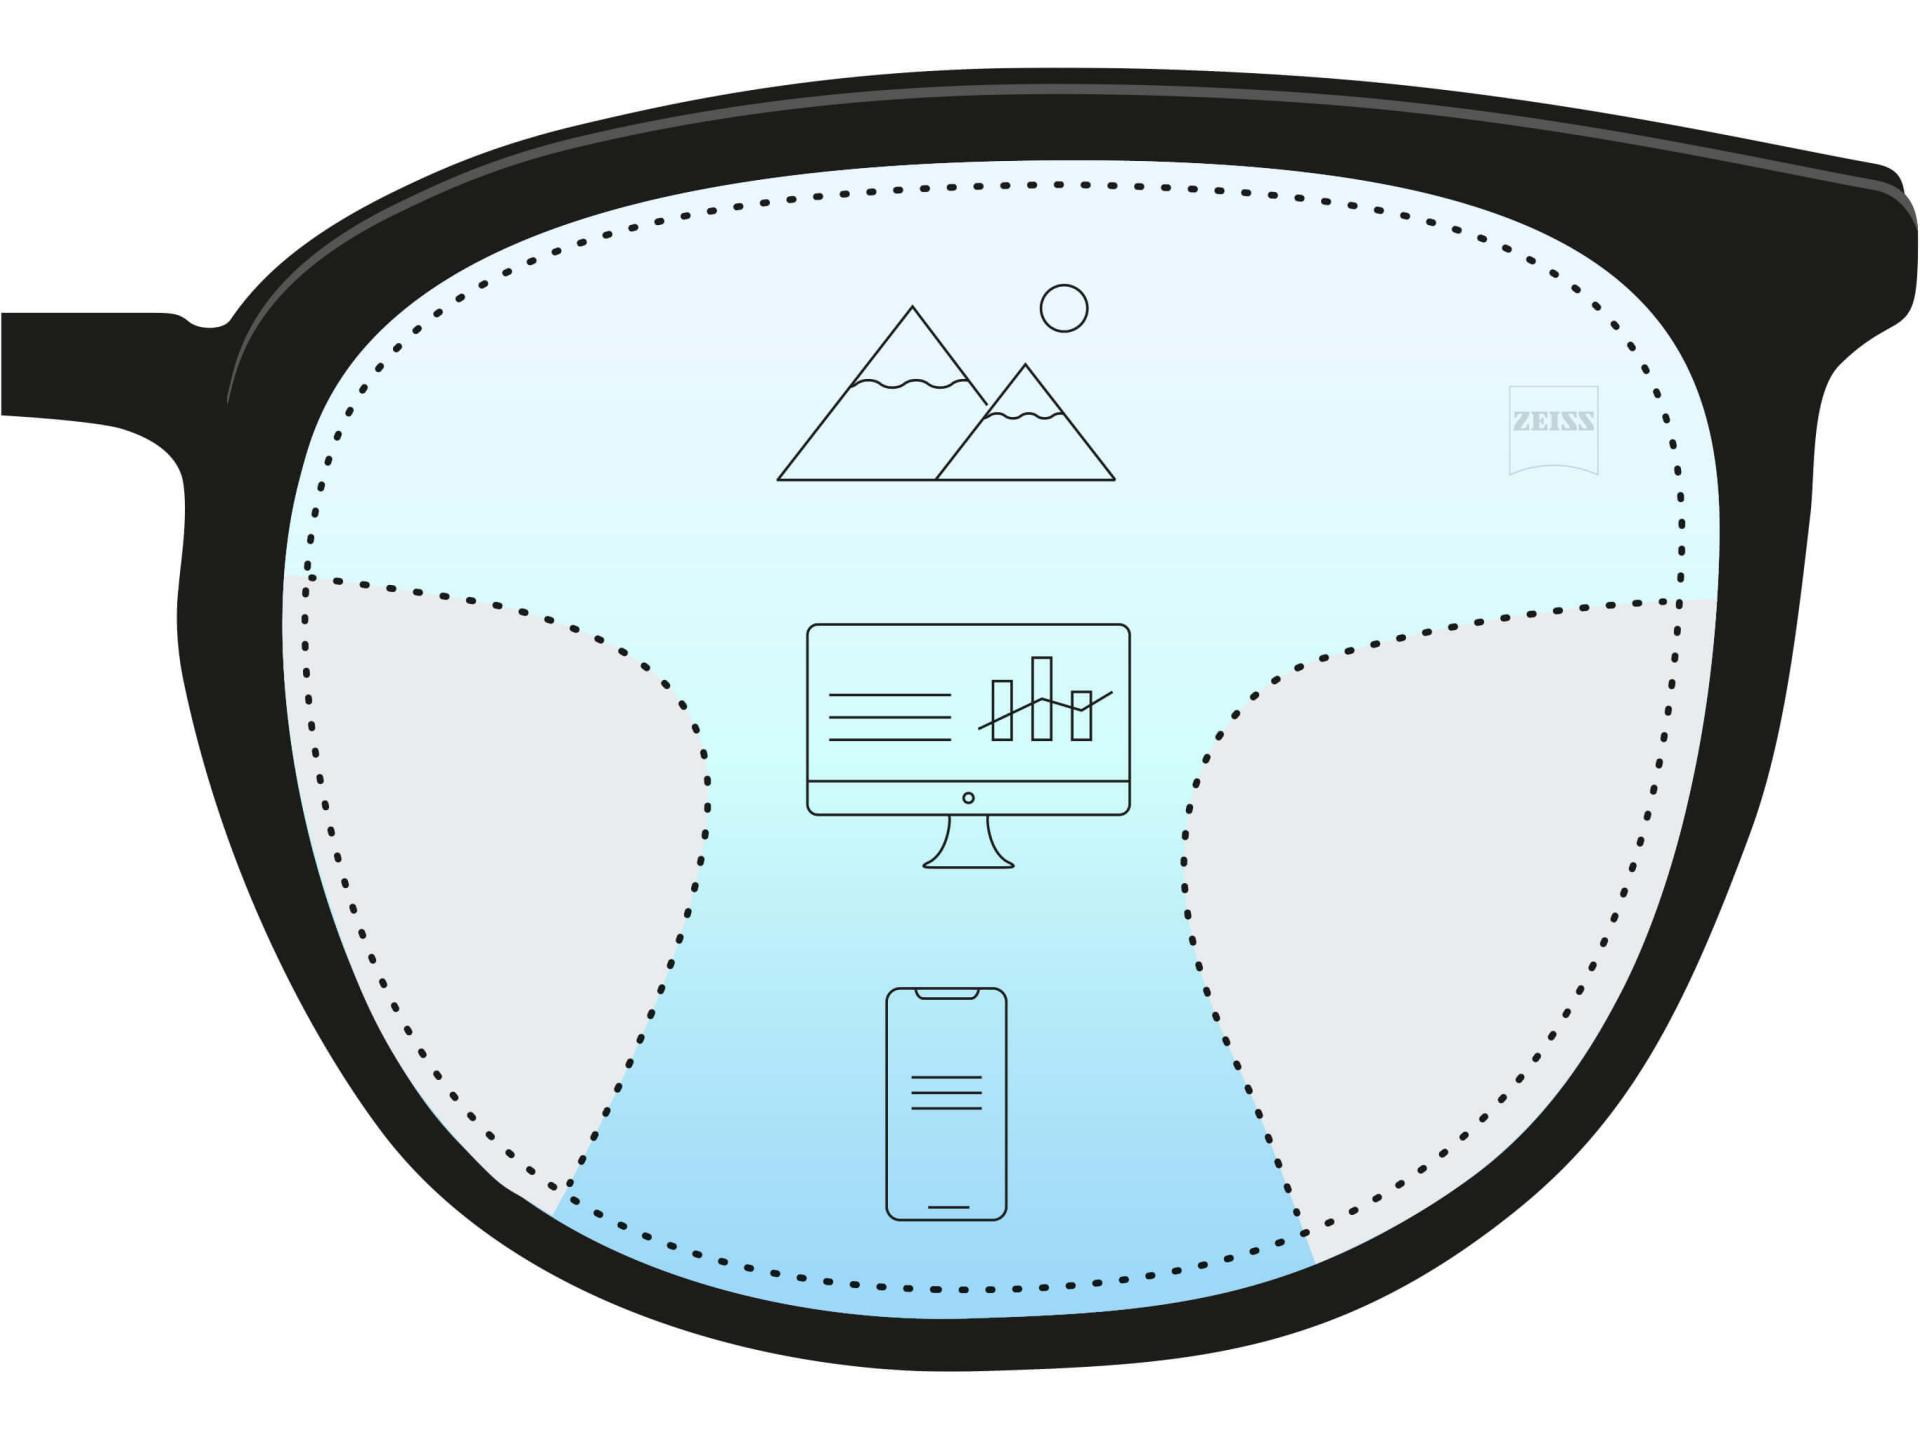 Ilustração de uma lente progressiva mostrando três zonas diferentes. Três ícones e um gradiente de cores indicam três receitas para distâncias diferentes: perto, intermediária e longe.